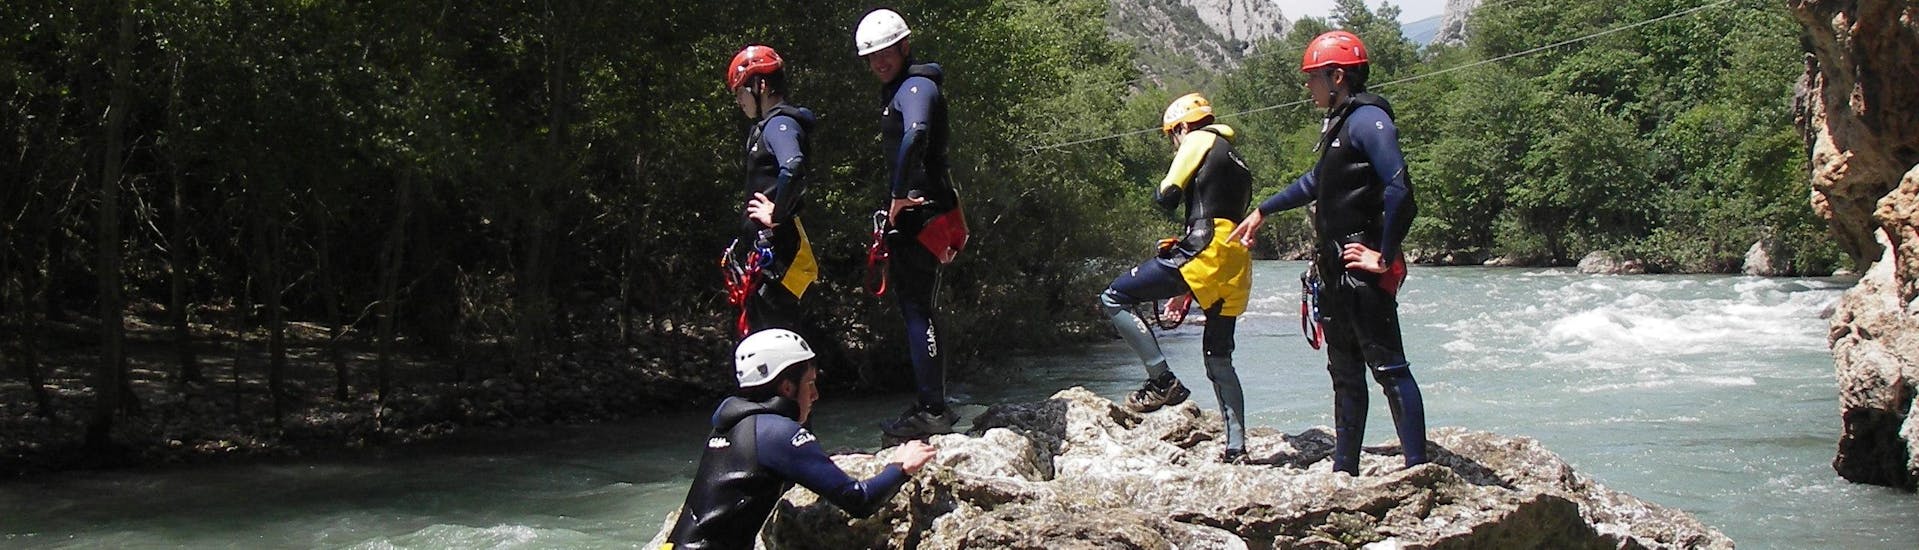 Barranquistas principiantes de pie sobre una roca en el río tras finalizar su excursión de barranquismo en el Barranco de Sant Pere con La Rafting Company.